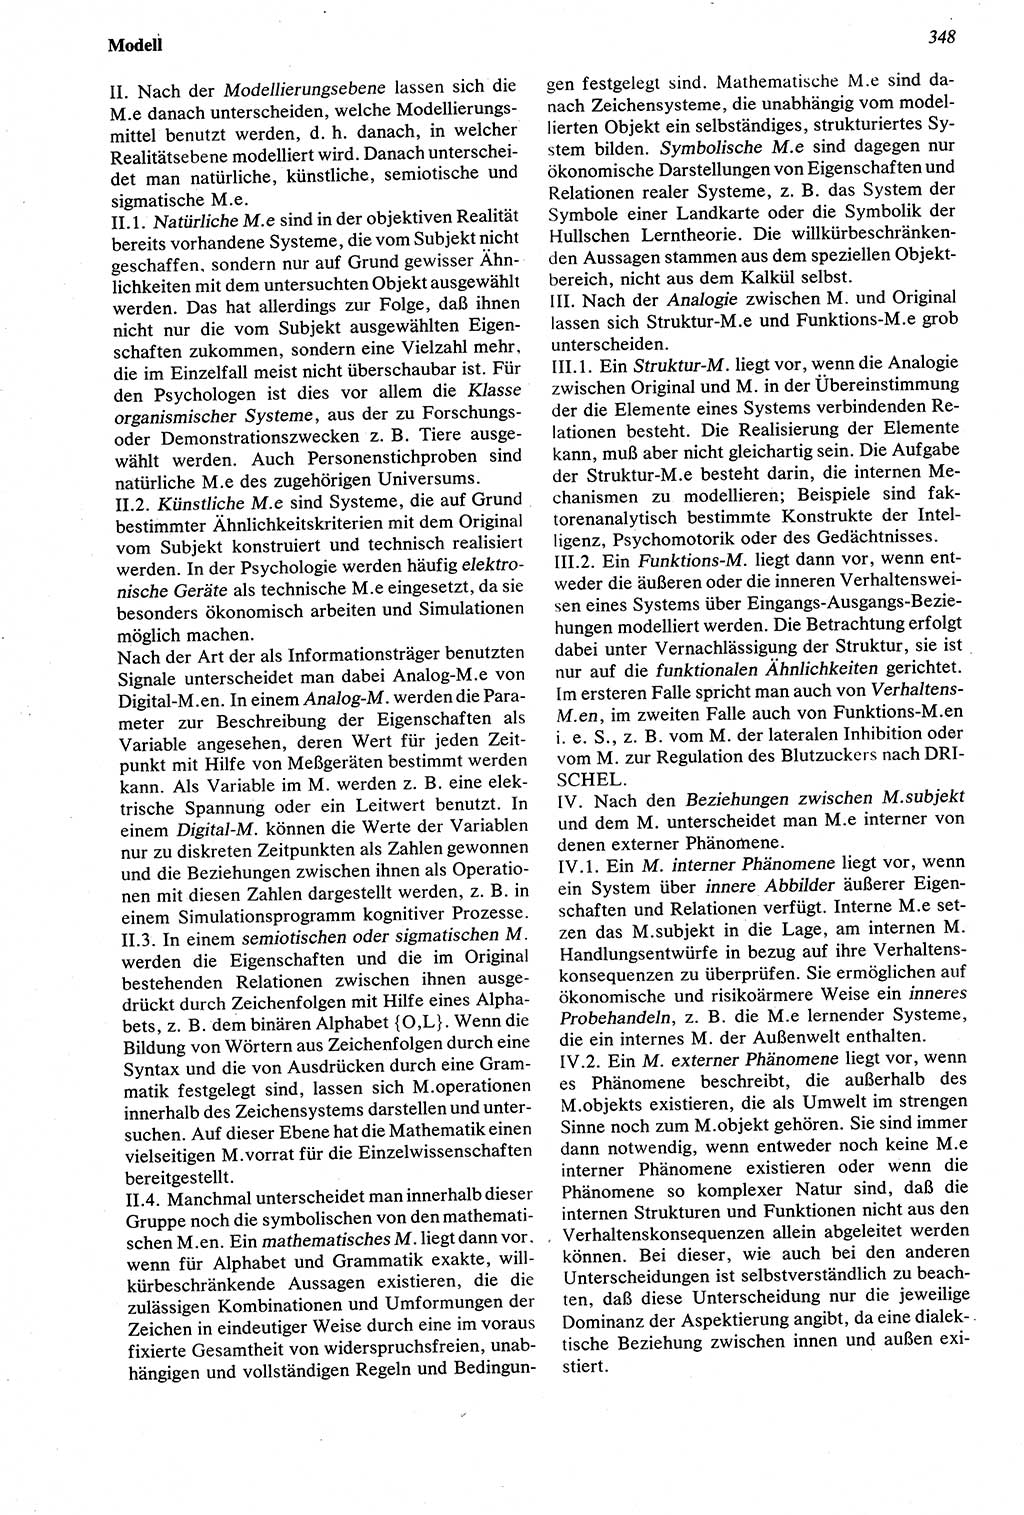 Wörterbuch der Psychologie [Deutsche Demokratische Republik (DDR)] 1976, Seite 348 (Wb. Psych. DDR 1976, S. 348)